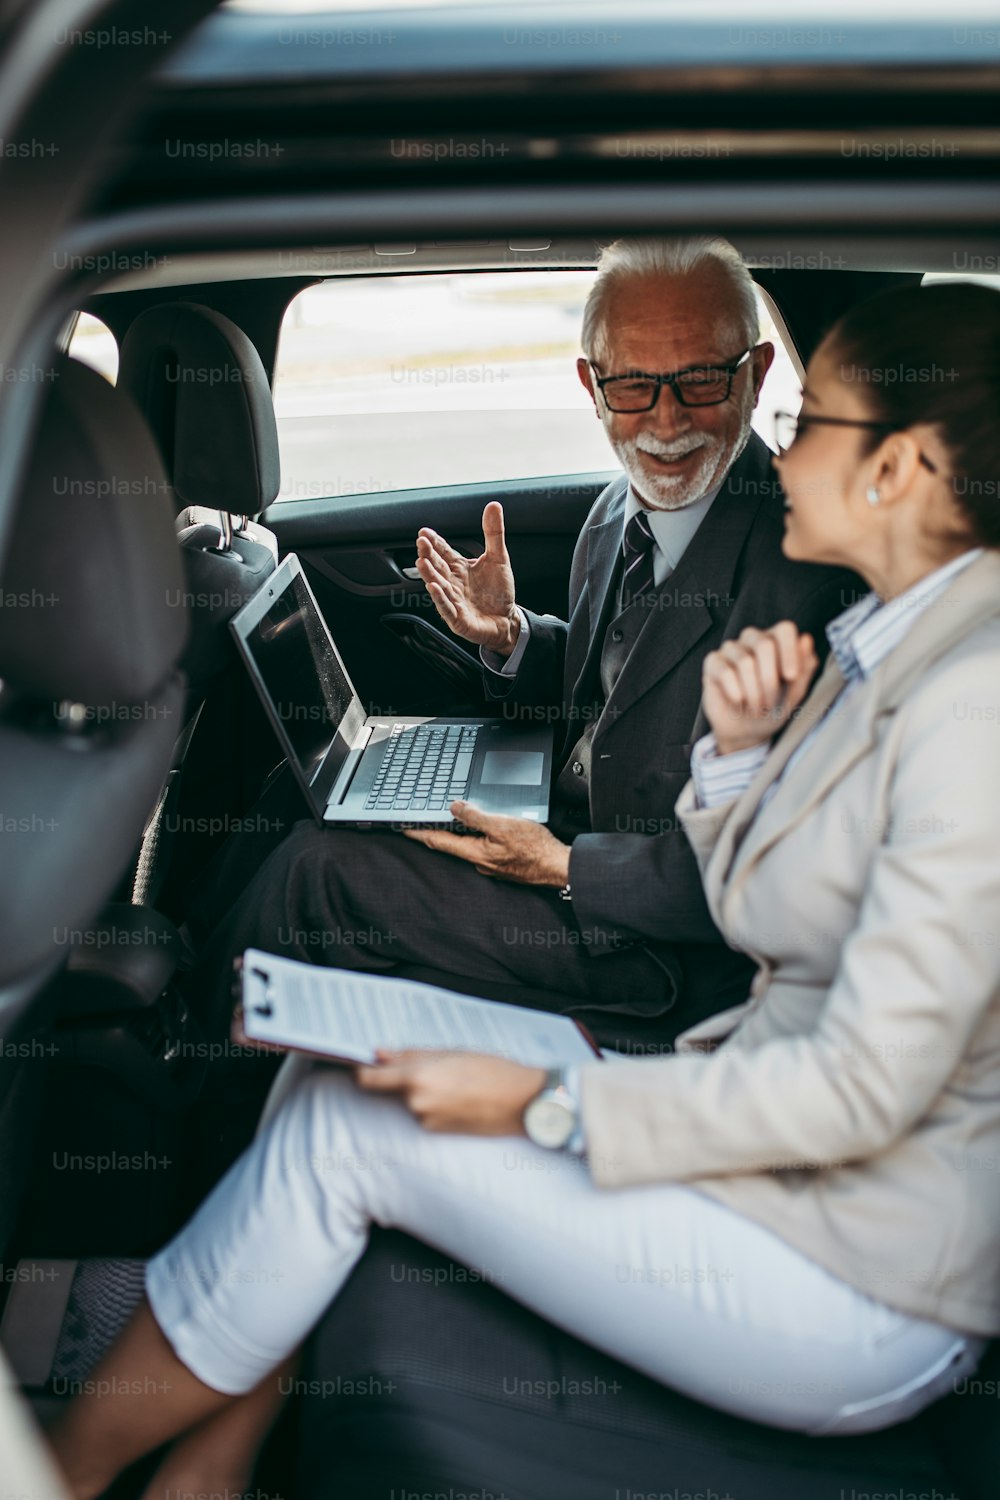 Un hombre de negocios de alto nivel y su colega o compañera de trabajo joven sentados en el asiento trasero de un automóvil de lujo. Hablan, sonríen y usan computadoras portátiles y teléfonos inteligentes. El transporte en el concepto de negocio corporativo.